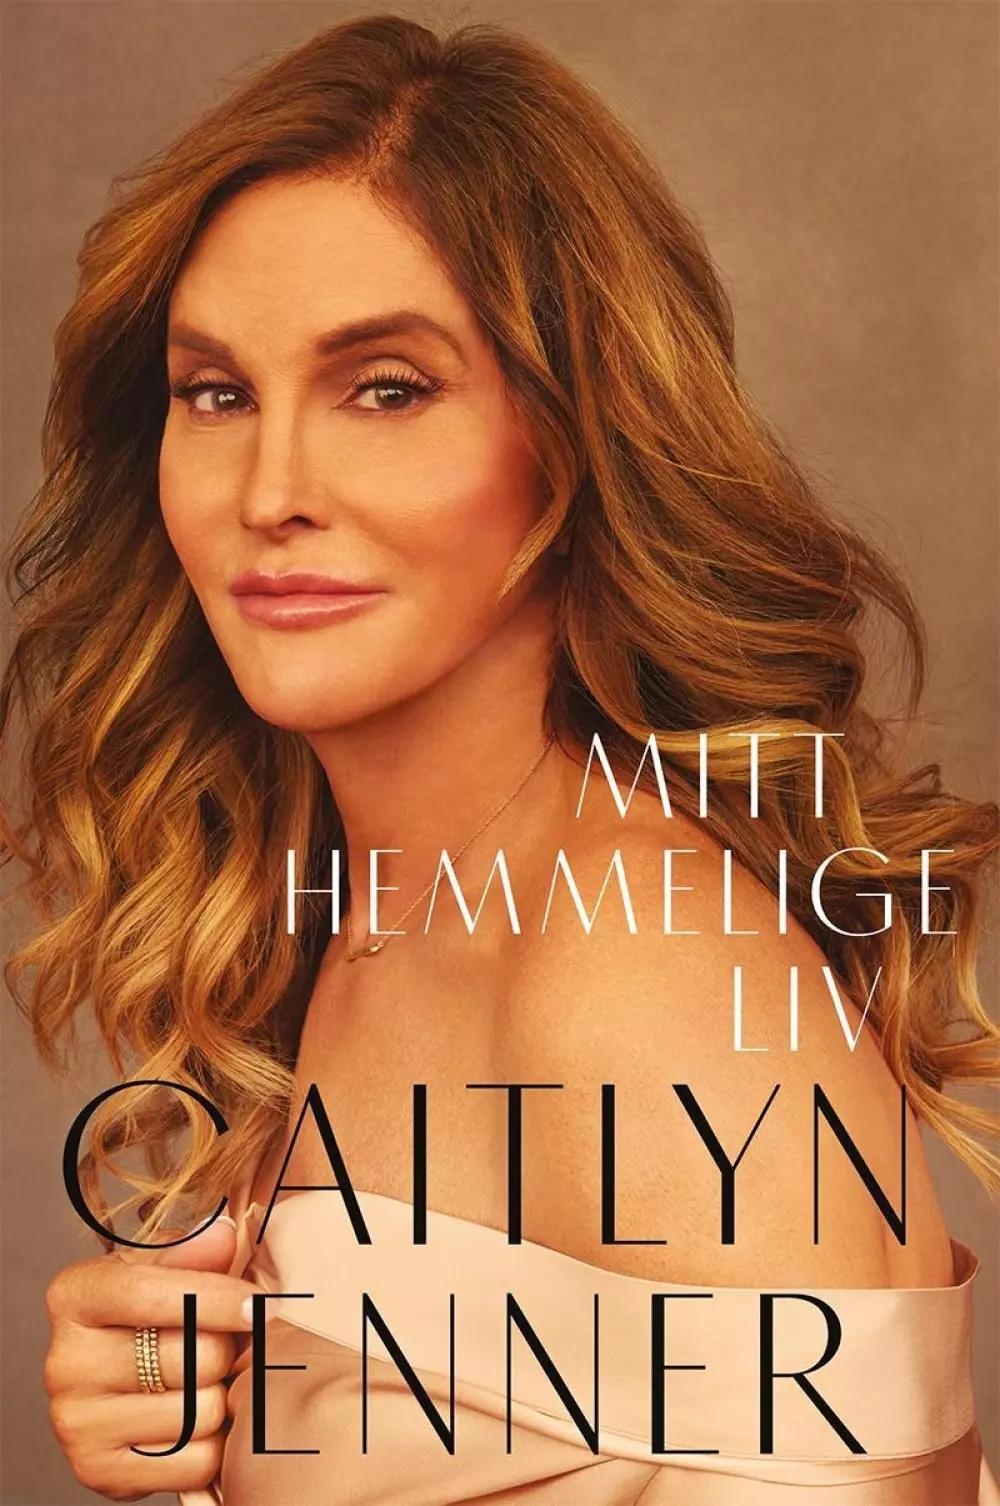 Caitlyn Jenner - Mitt hemmelige liv, 9788282059855, Romaner, Caitlyn Jenner - Innbundet biografi